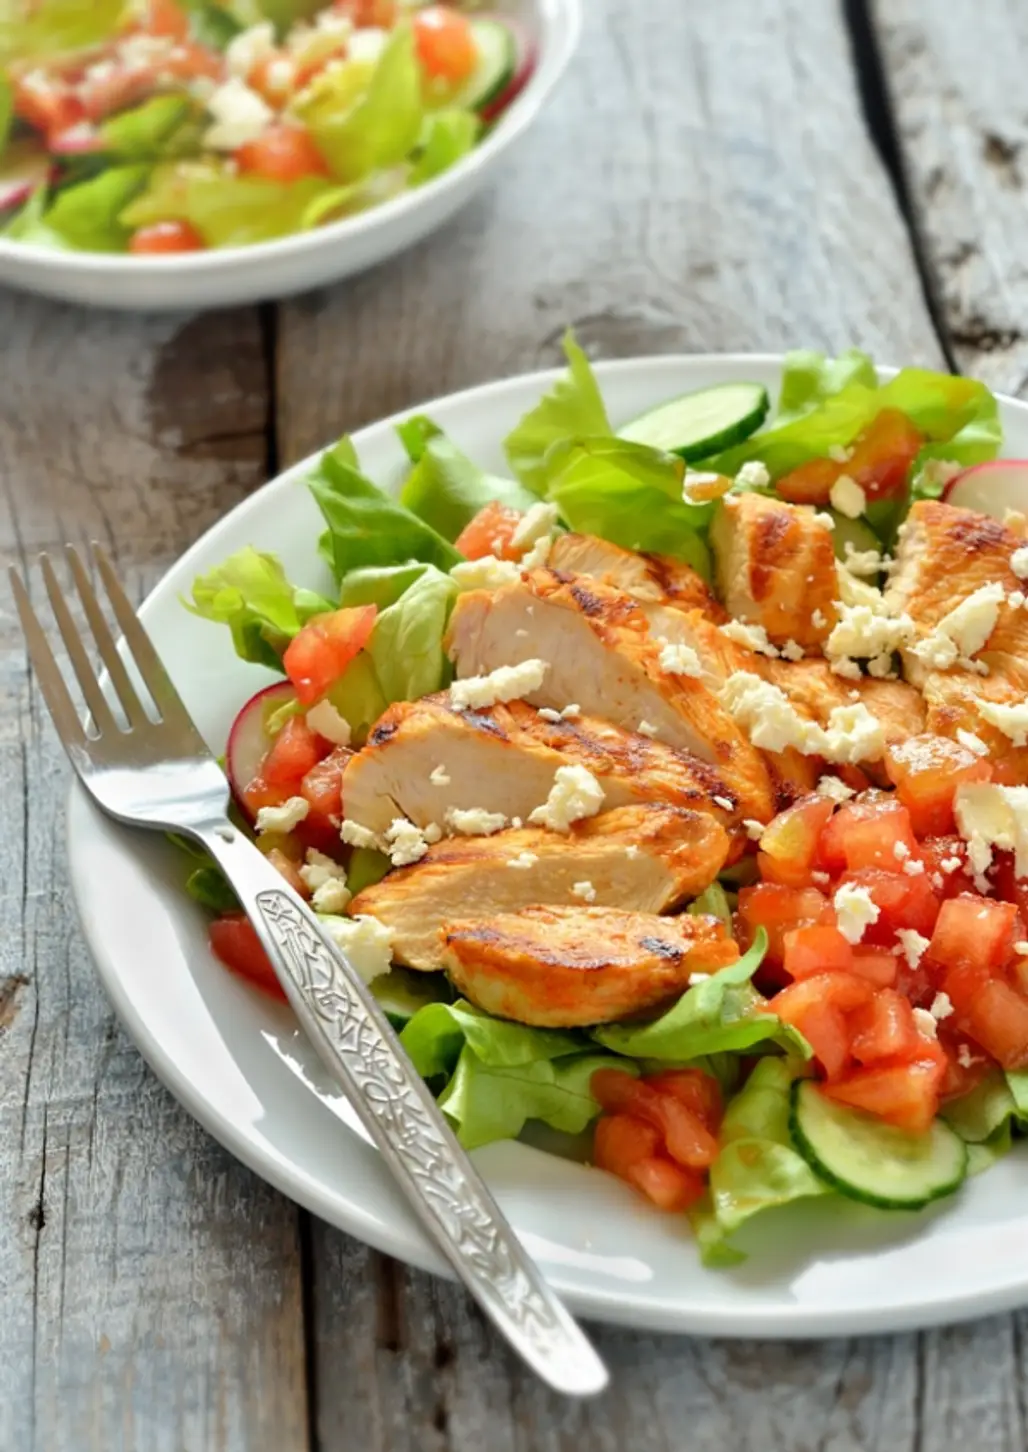 Chick-fil-a Grilled Market Salad